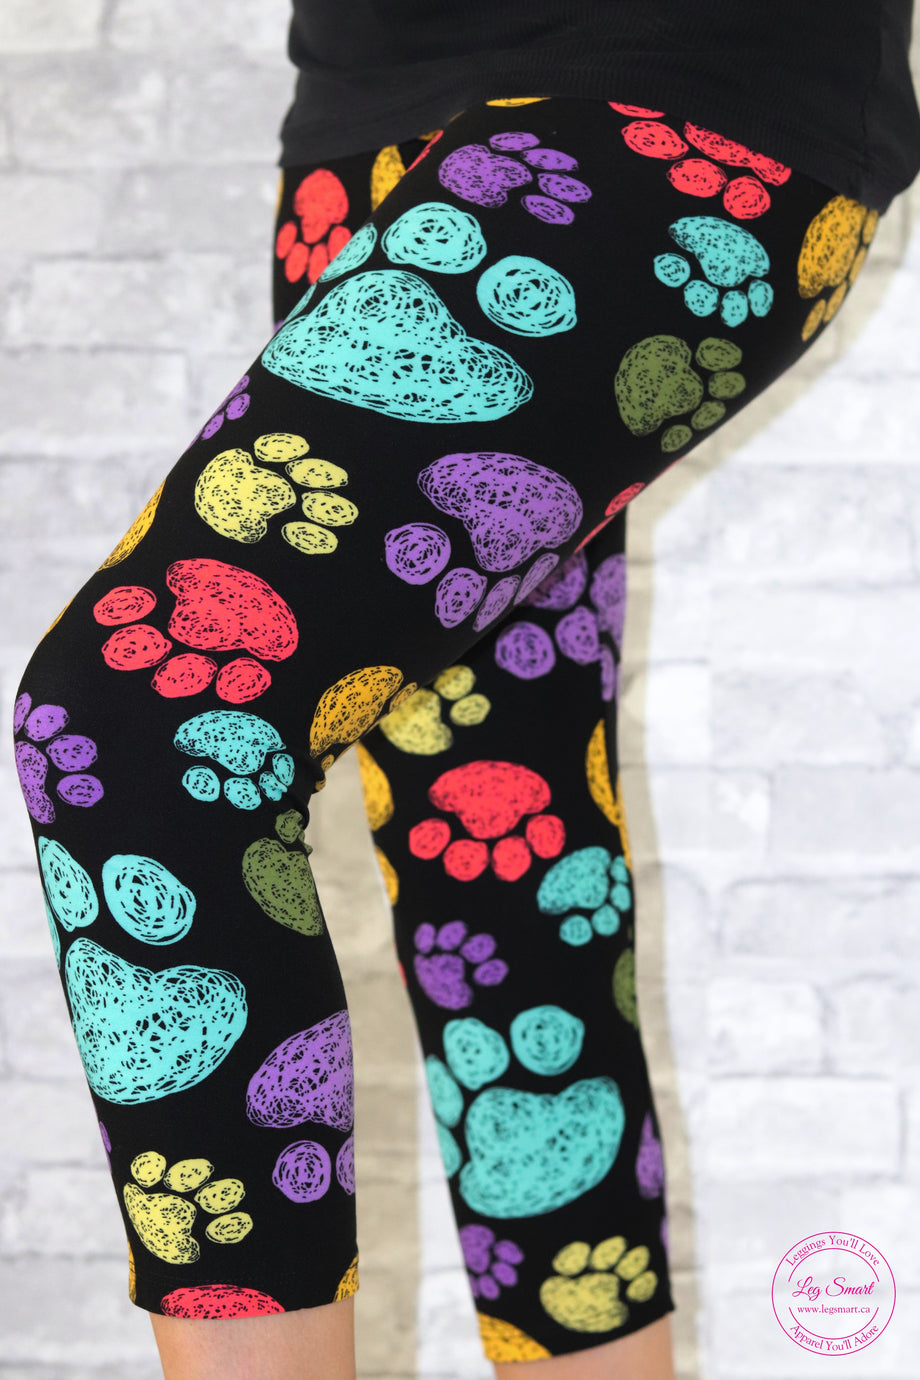 Animal Print Hot Yoga Pants Low Rise Capri Printed Leggings SXYFITNESS USA